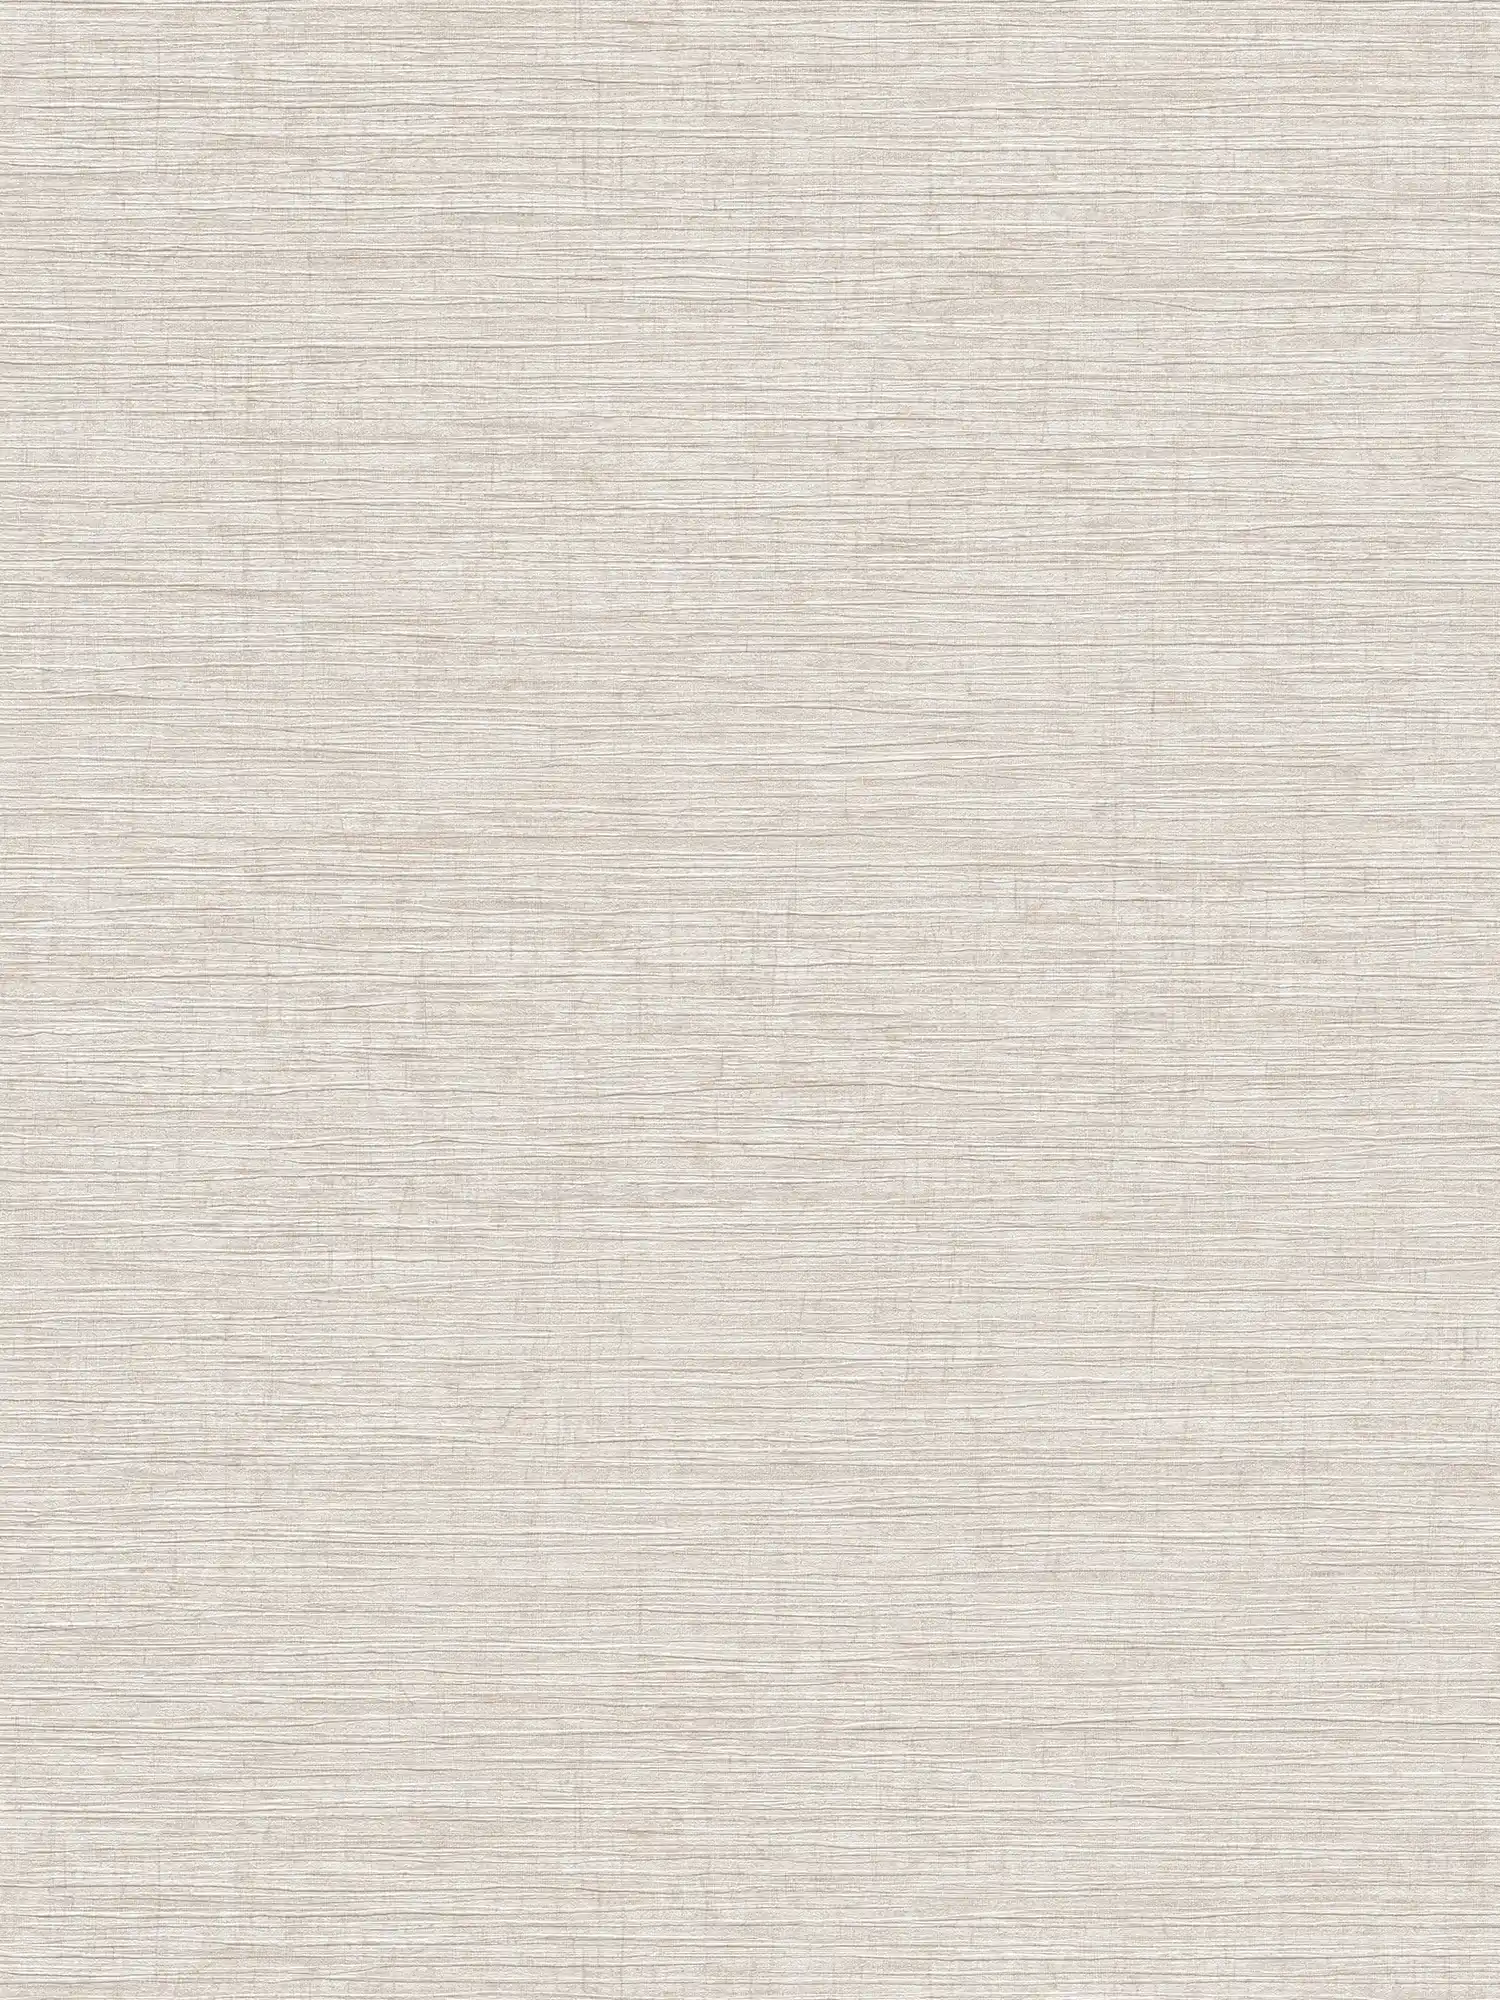         Vliestapete meliert mit textilem Prägemuster – Beige, Braun, Grau
    